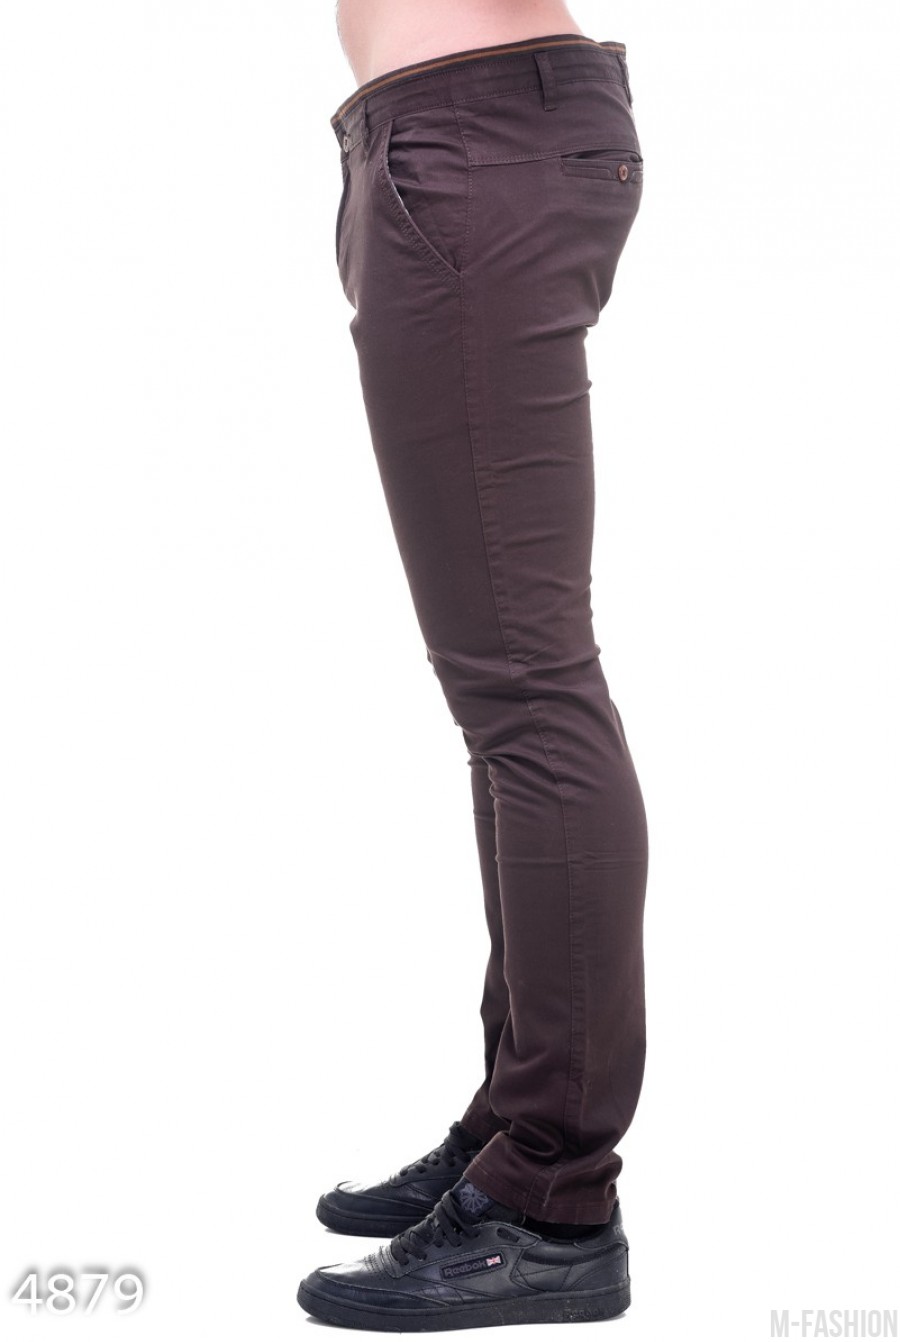 Мужские зауженные брюки цвета темного шоколада- Фото 2